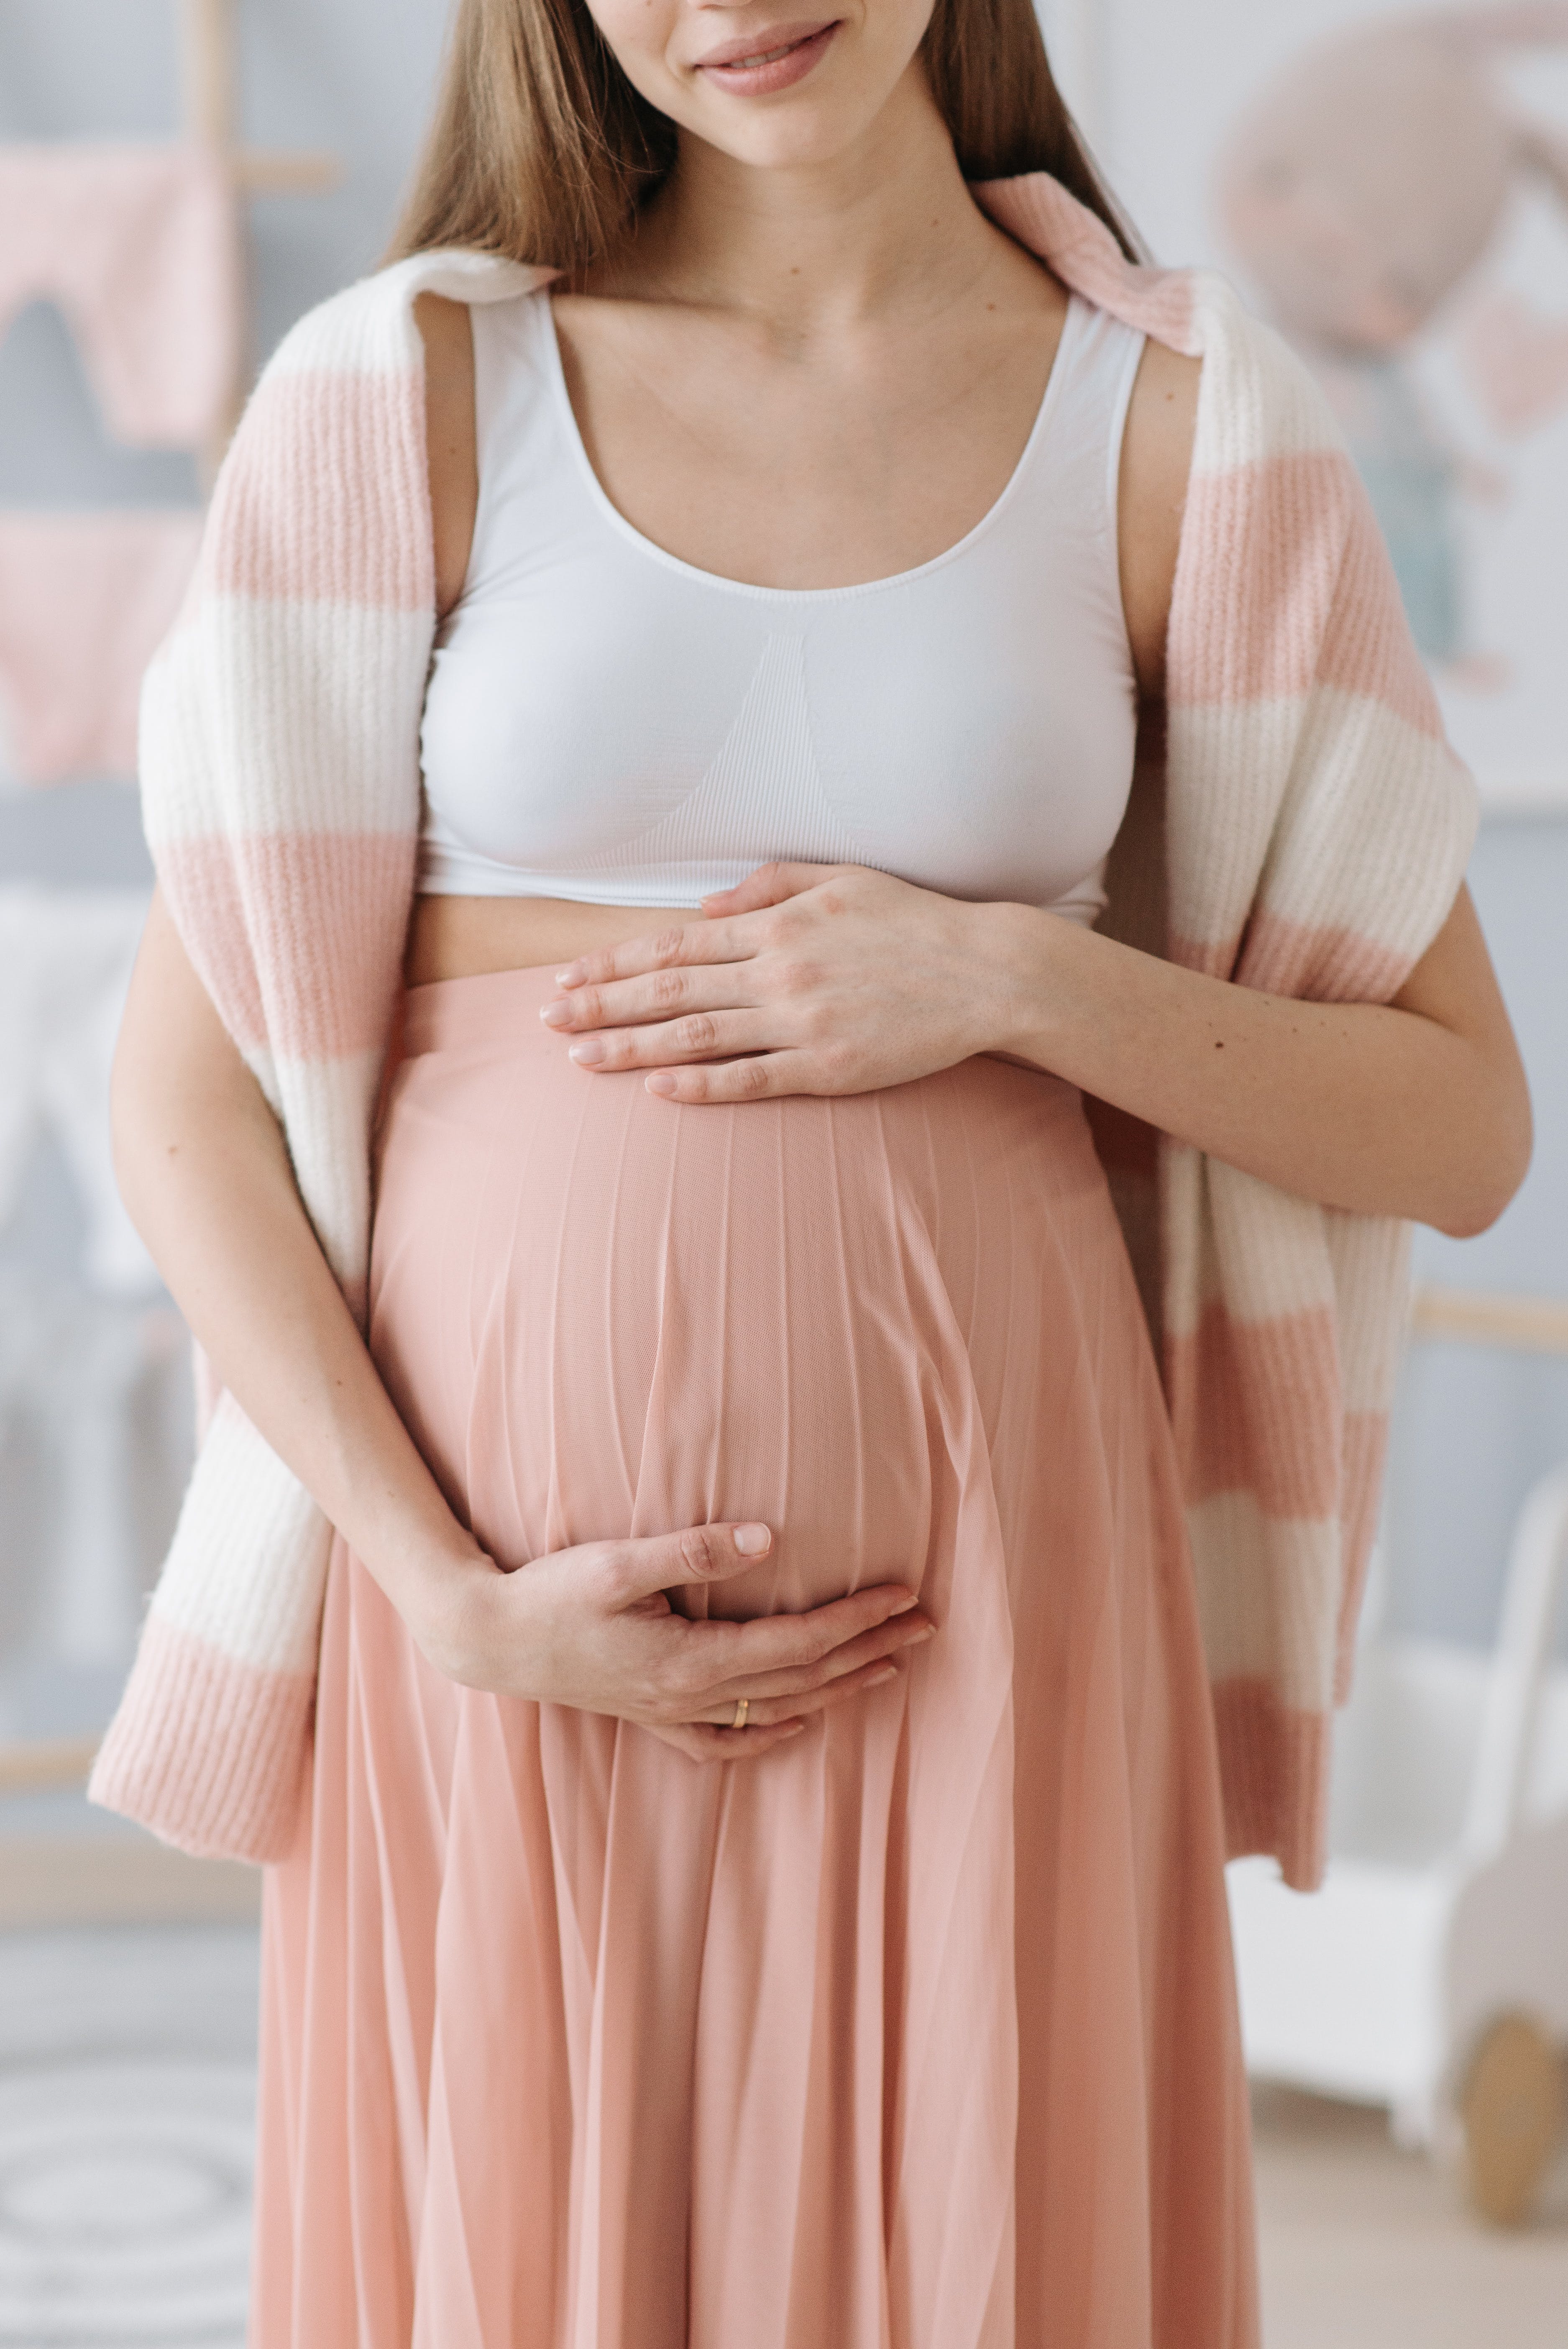 Eine Frau, die ihren Babybauch wiegt | Quelle: Pexels